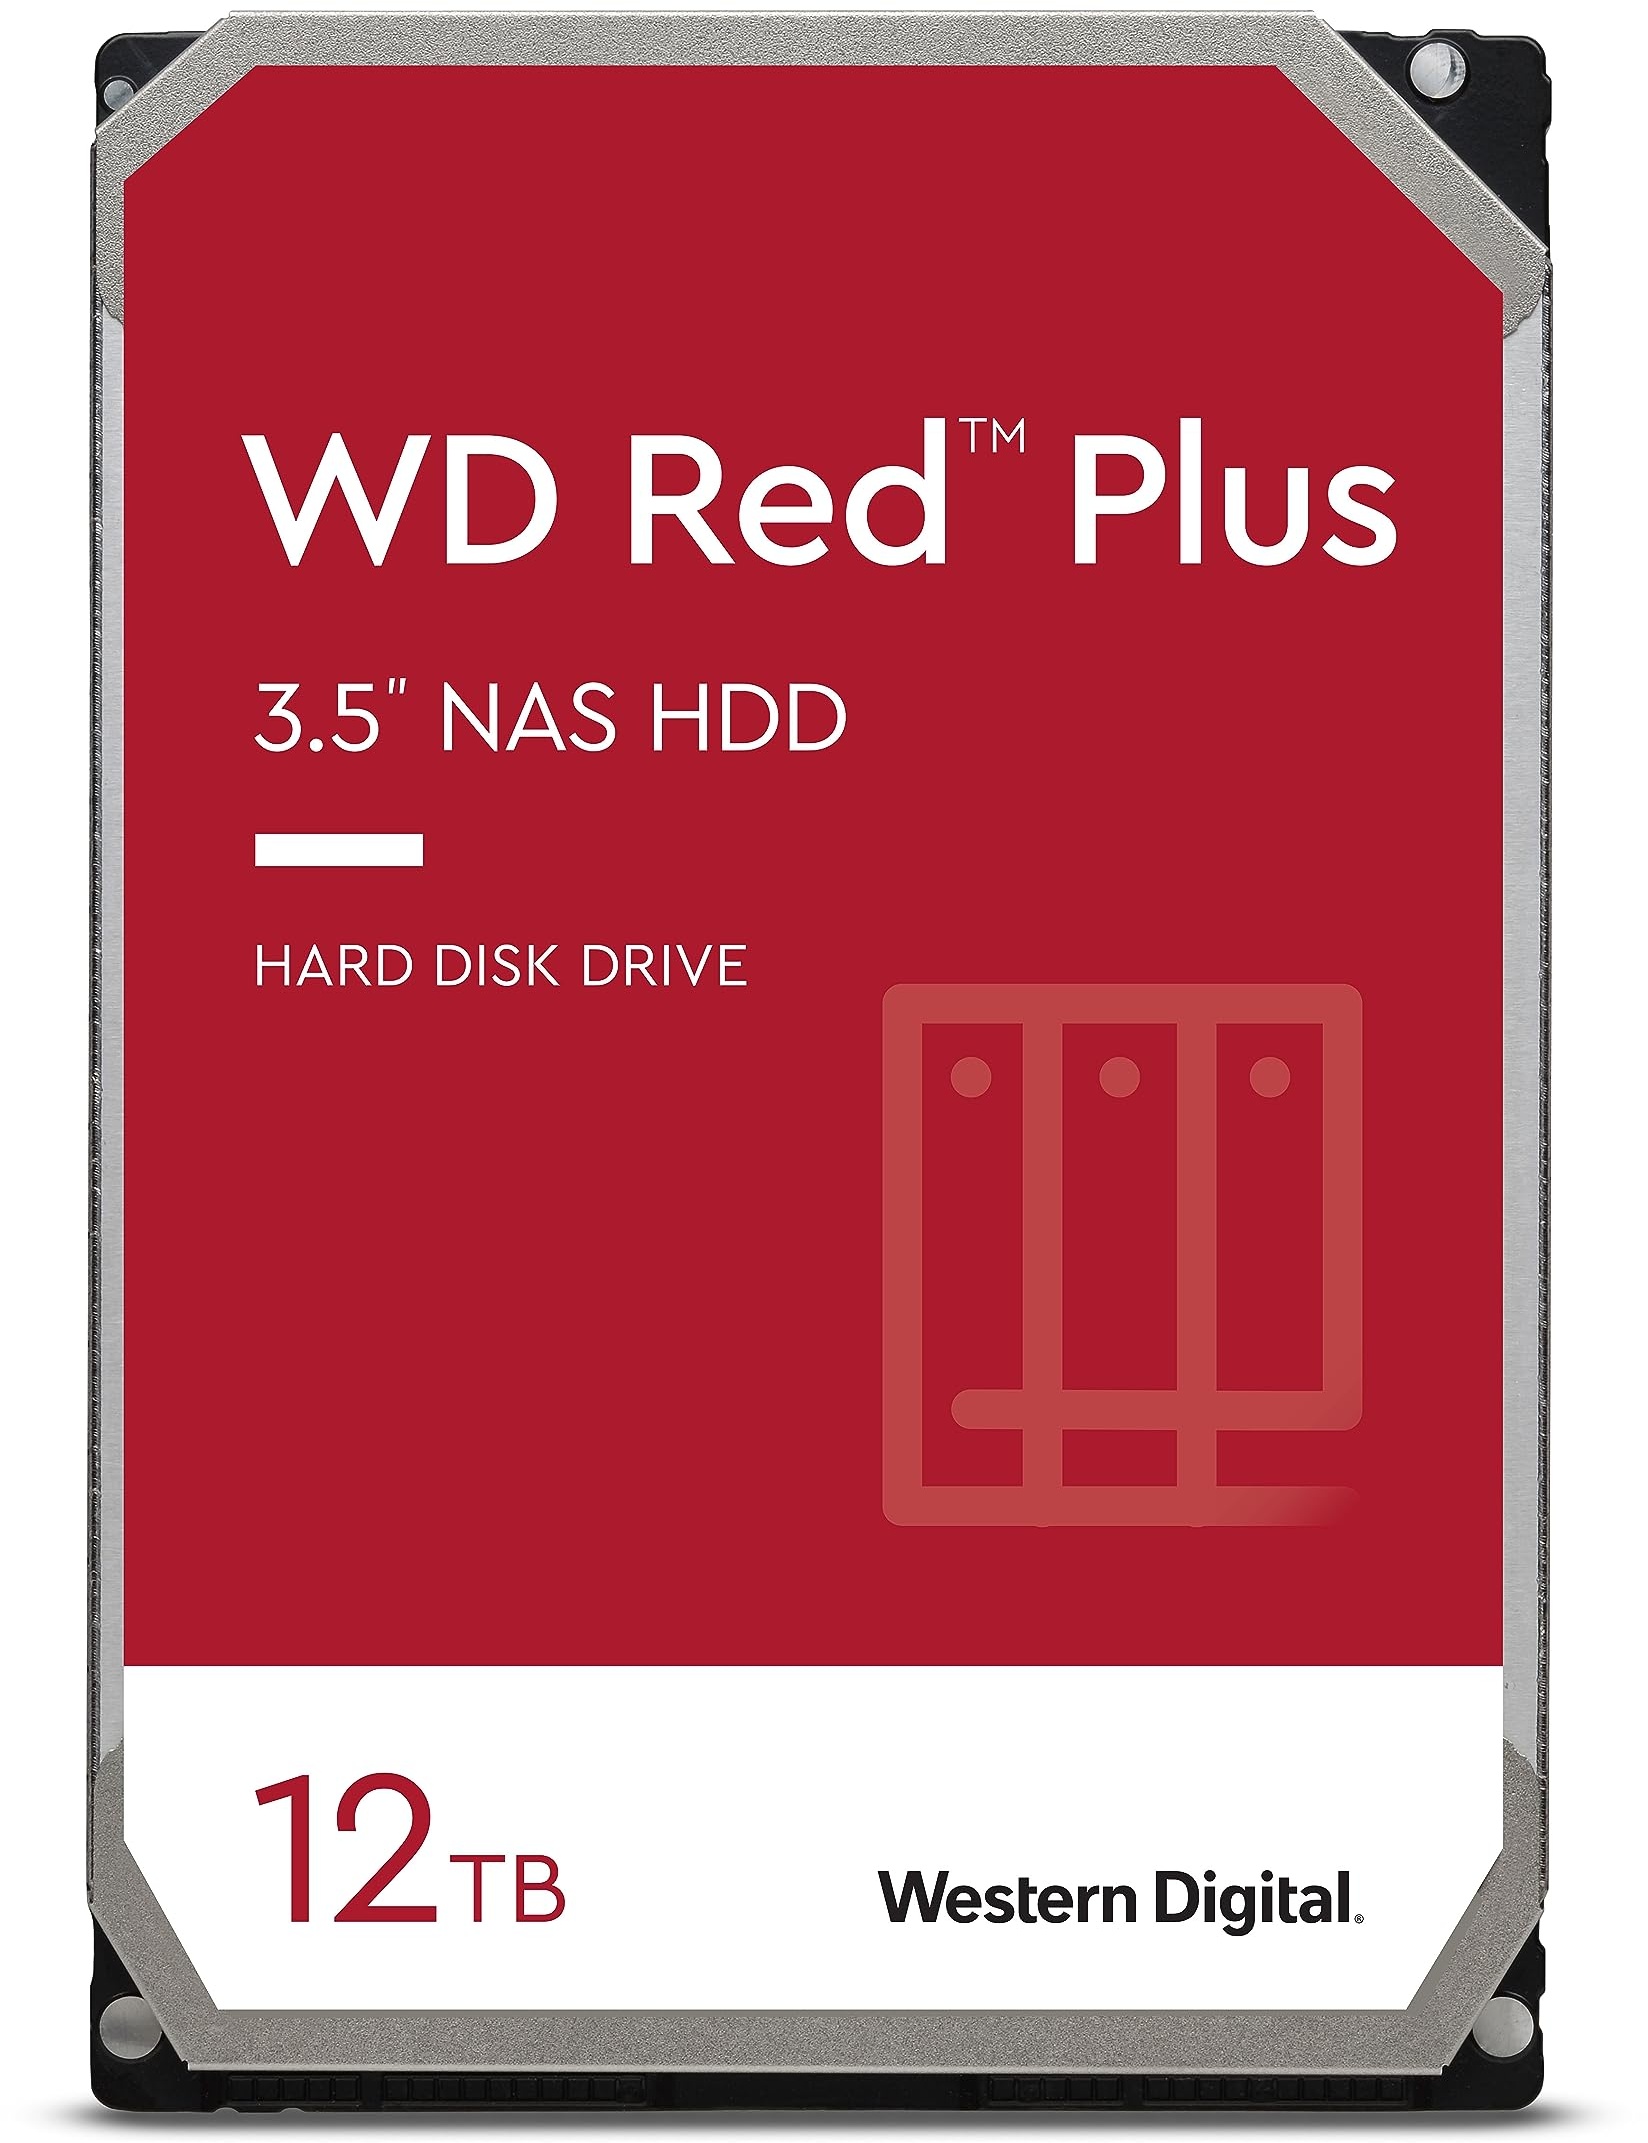 WD Red Plus interne Festplatte NAS 12 TB (3,5 Zoll, Workload-Rate 180 TB/Jahr, 7.200 U/min, 256 MB Cache, 196 MB/s Übertragungsrate, NASware-Firmware für Kompatibilität, 8 Bays) Rot